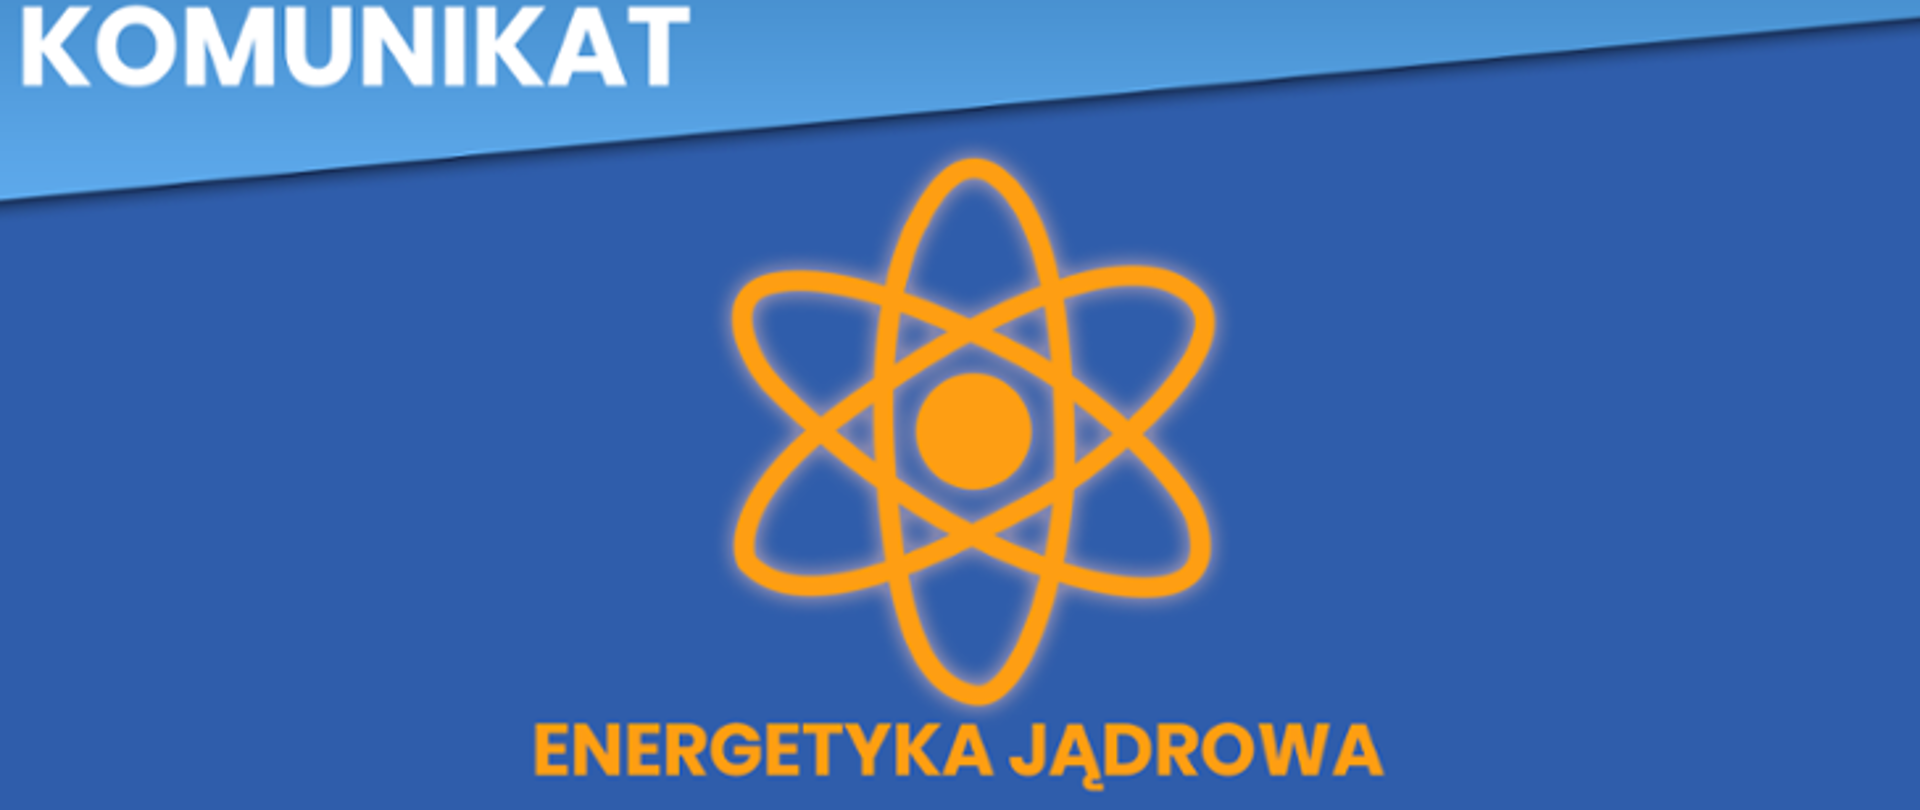 Zacieśnienie współpracy w dziedzinie cywilnej energii jądrowej pomiędzy Polską i Stanami Zjednoczonymi